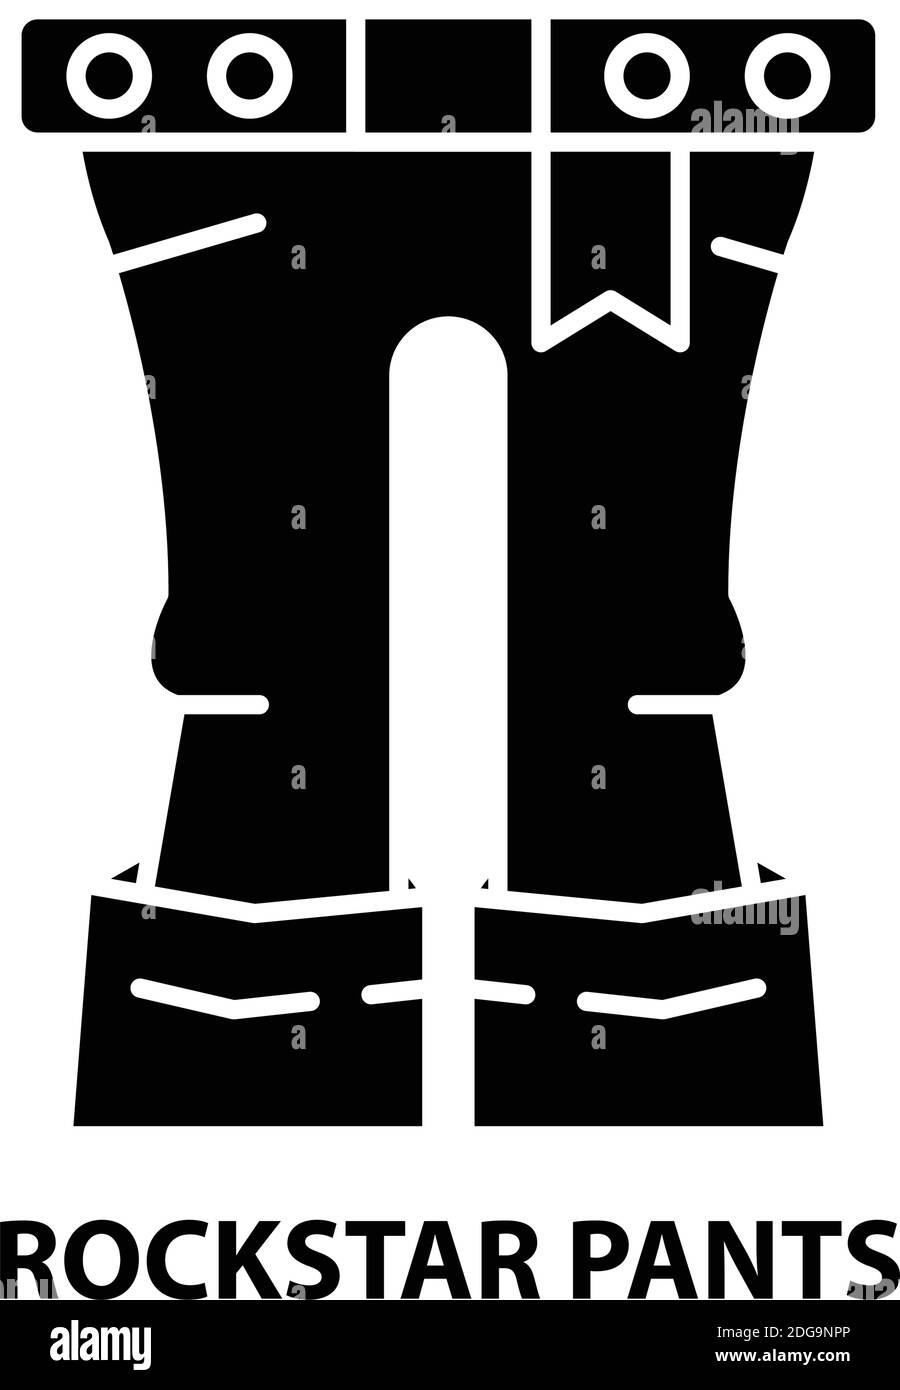 rockstar Pants Icon, schwarzes Vektorzeichen mit editierbaren Striche, Konzeptdarstellung Stock Vektor